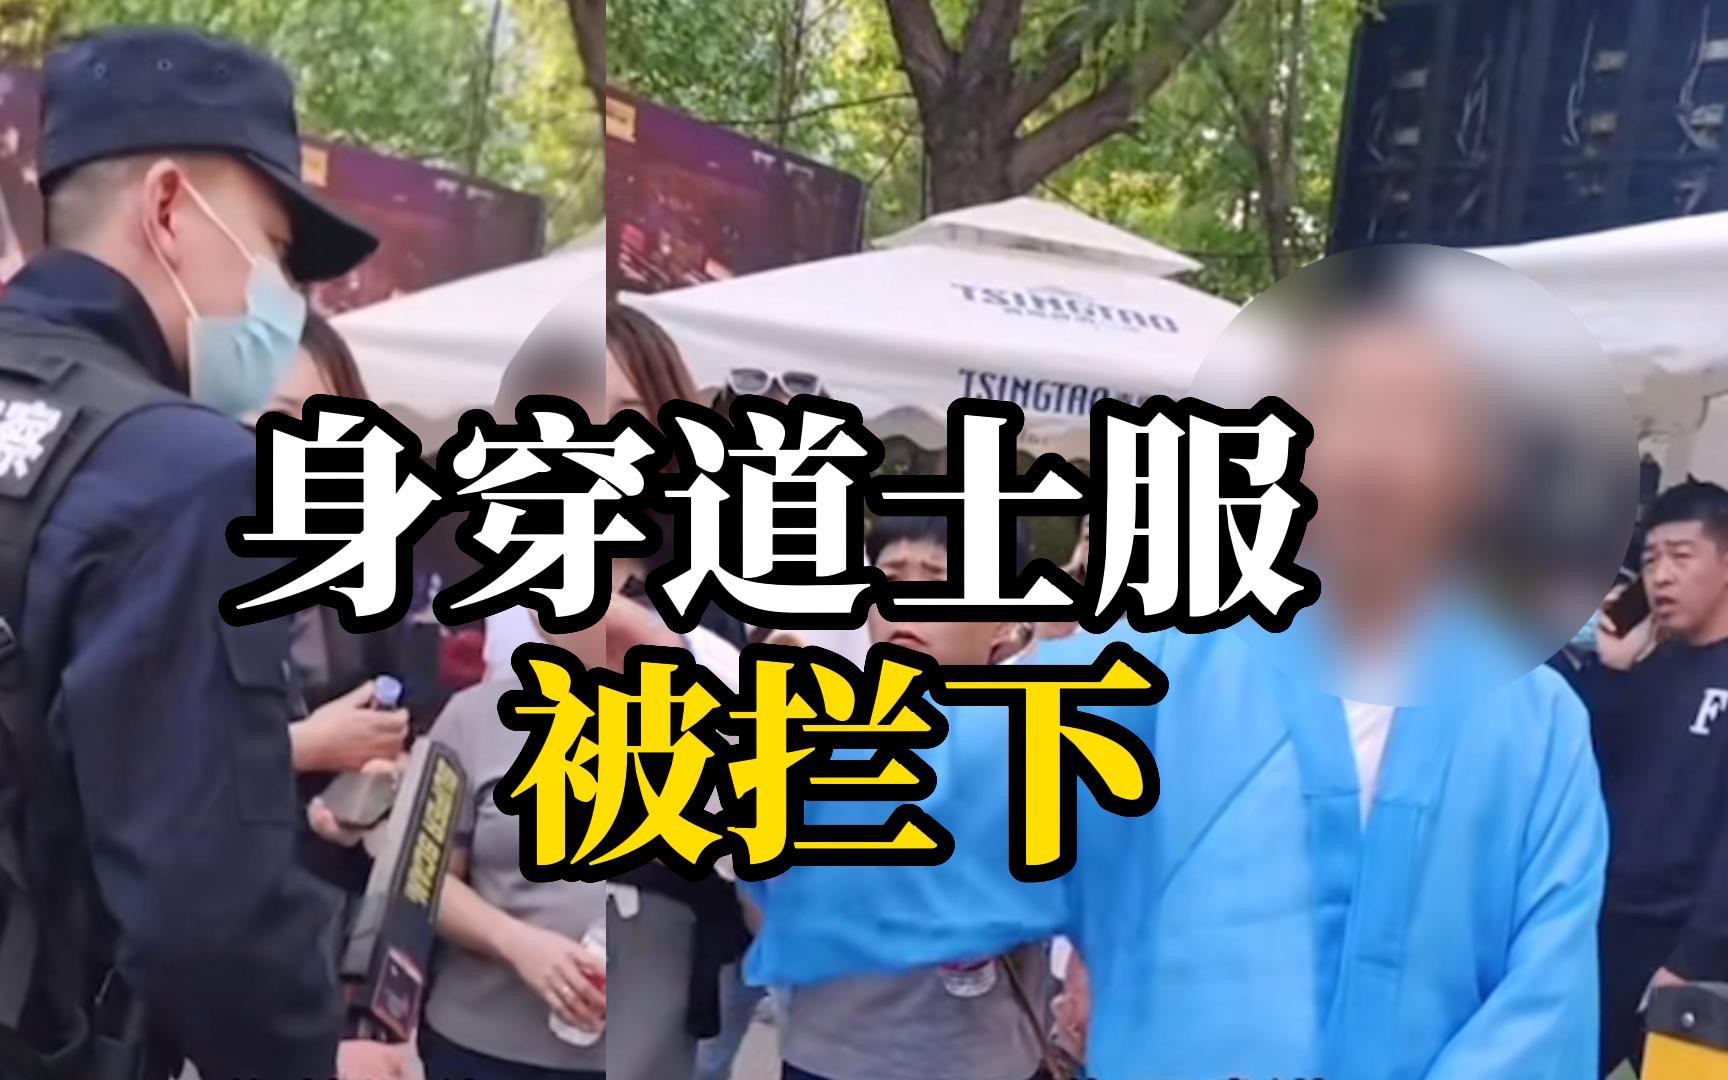 一位身穿道士服的男子在淄博烧烤景区门口被拦下